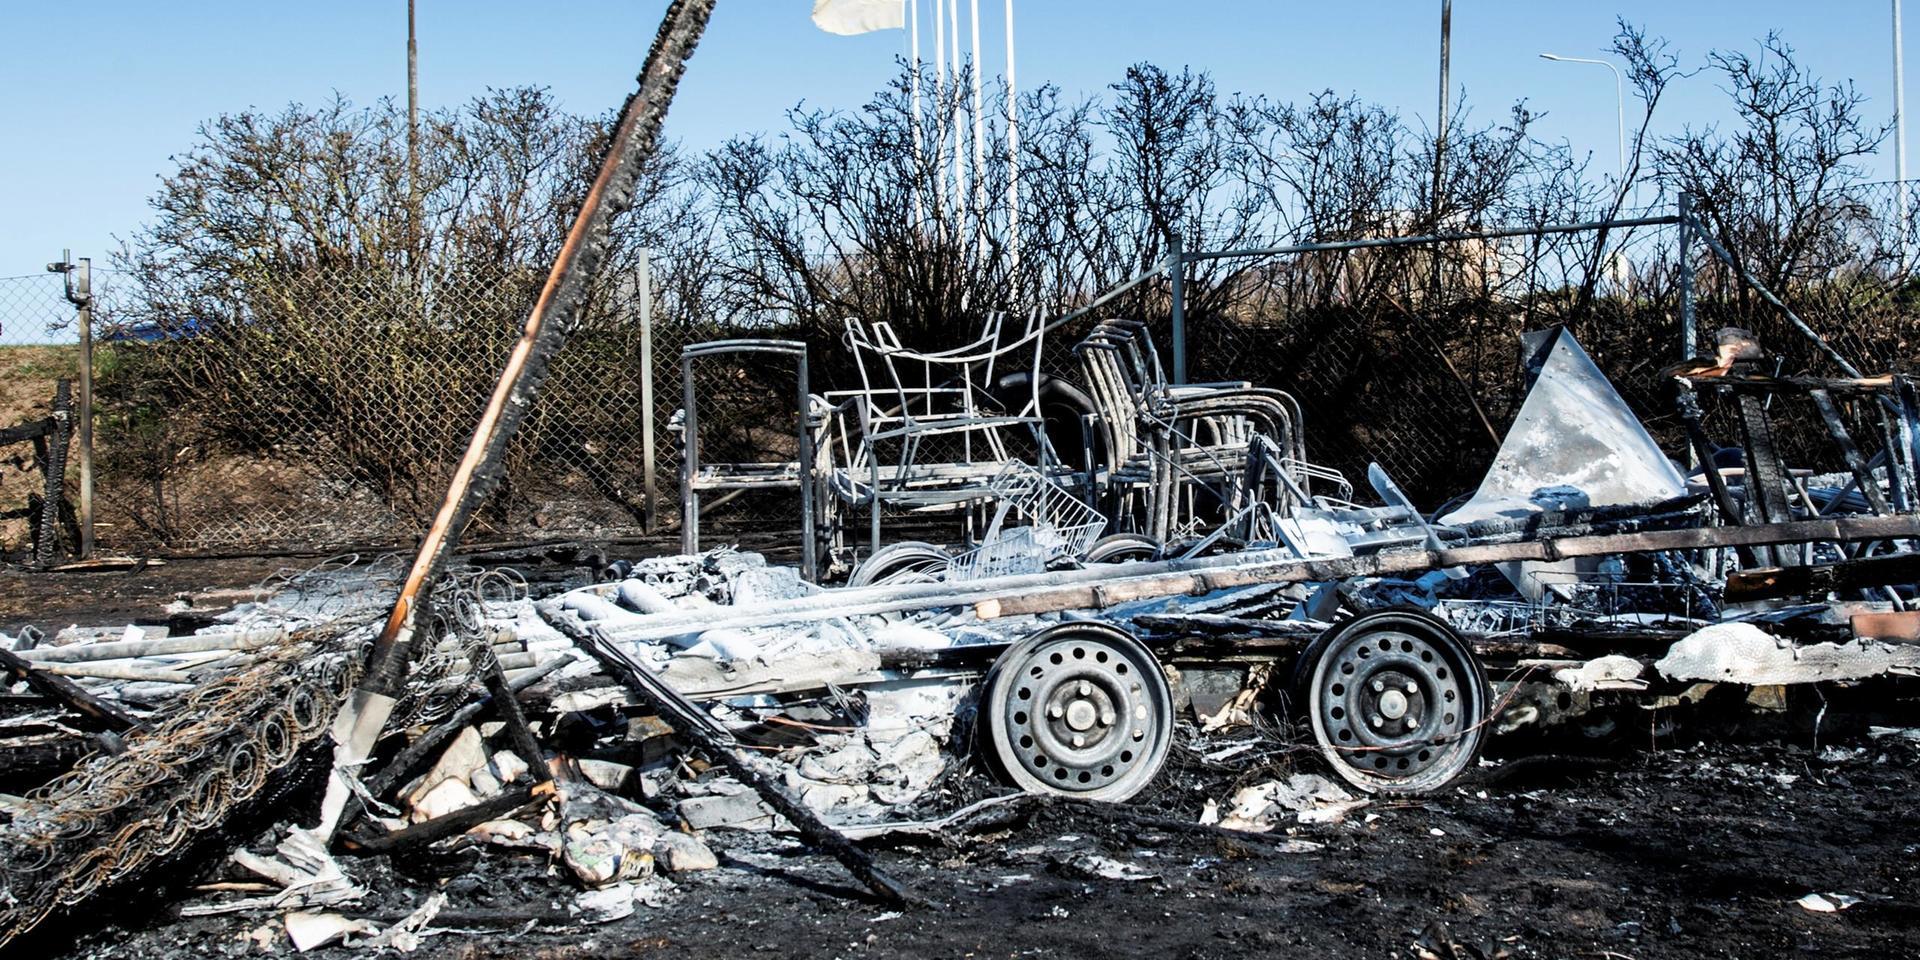 En husvagn blev totalförstörd efter branden natten till måndagen. Branden kan utredas som misstänkt mordbrand.